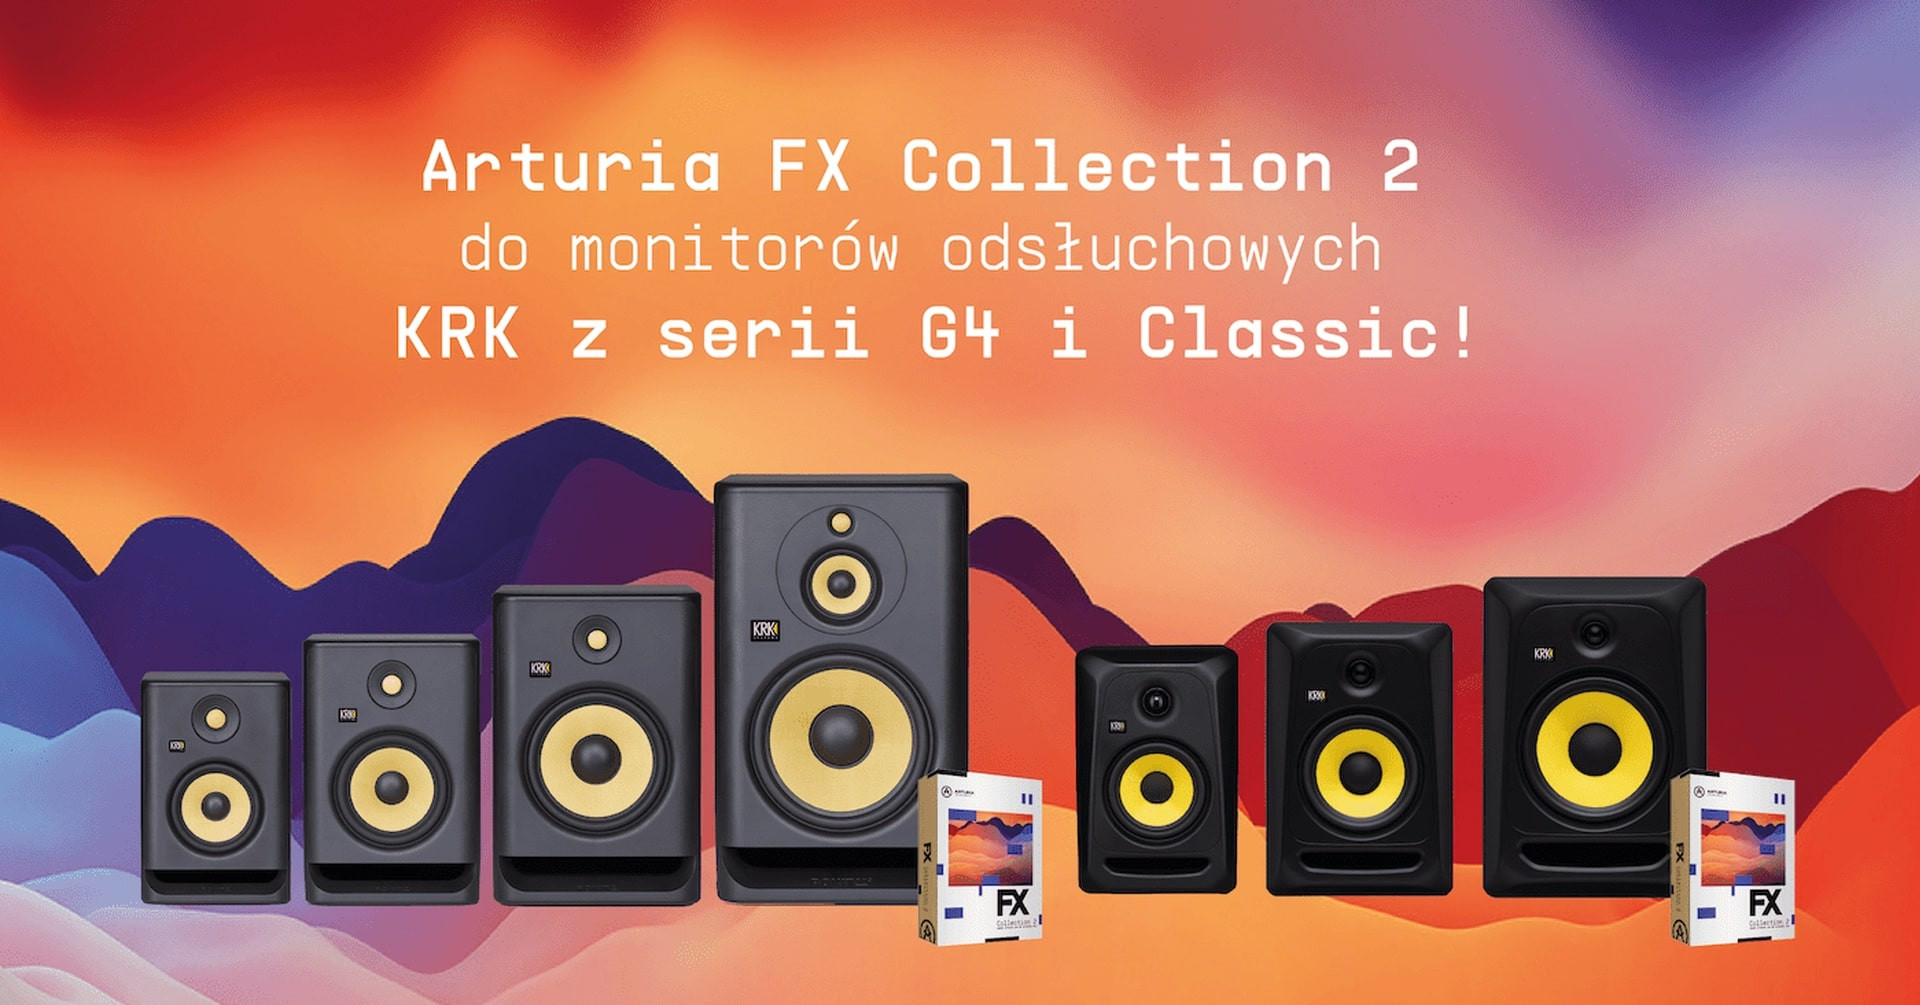 Kup monitory KRK z serii ROKIT G4 lub Classic i odbierz Arturia FX Collection 2 za darmo!